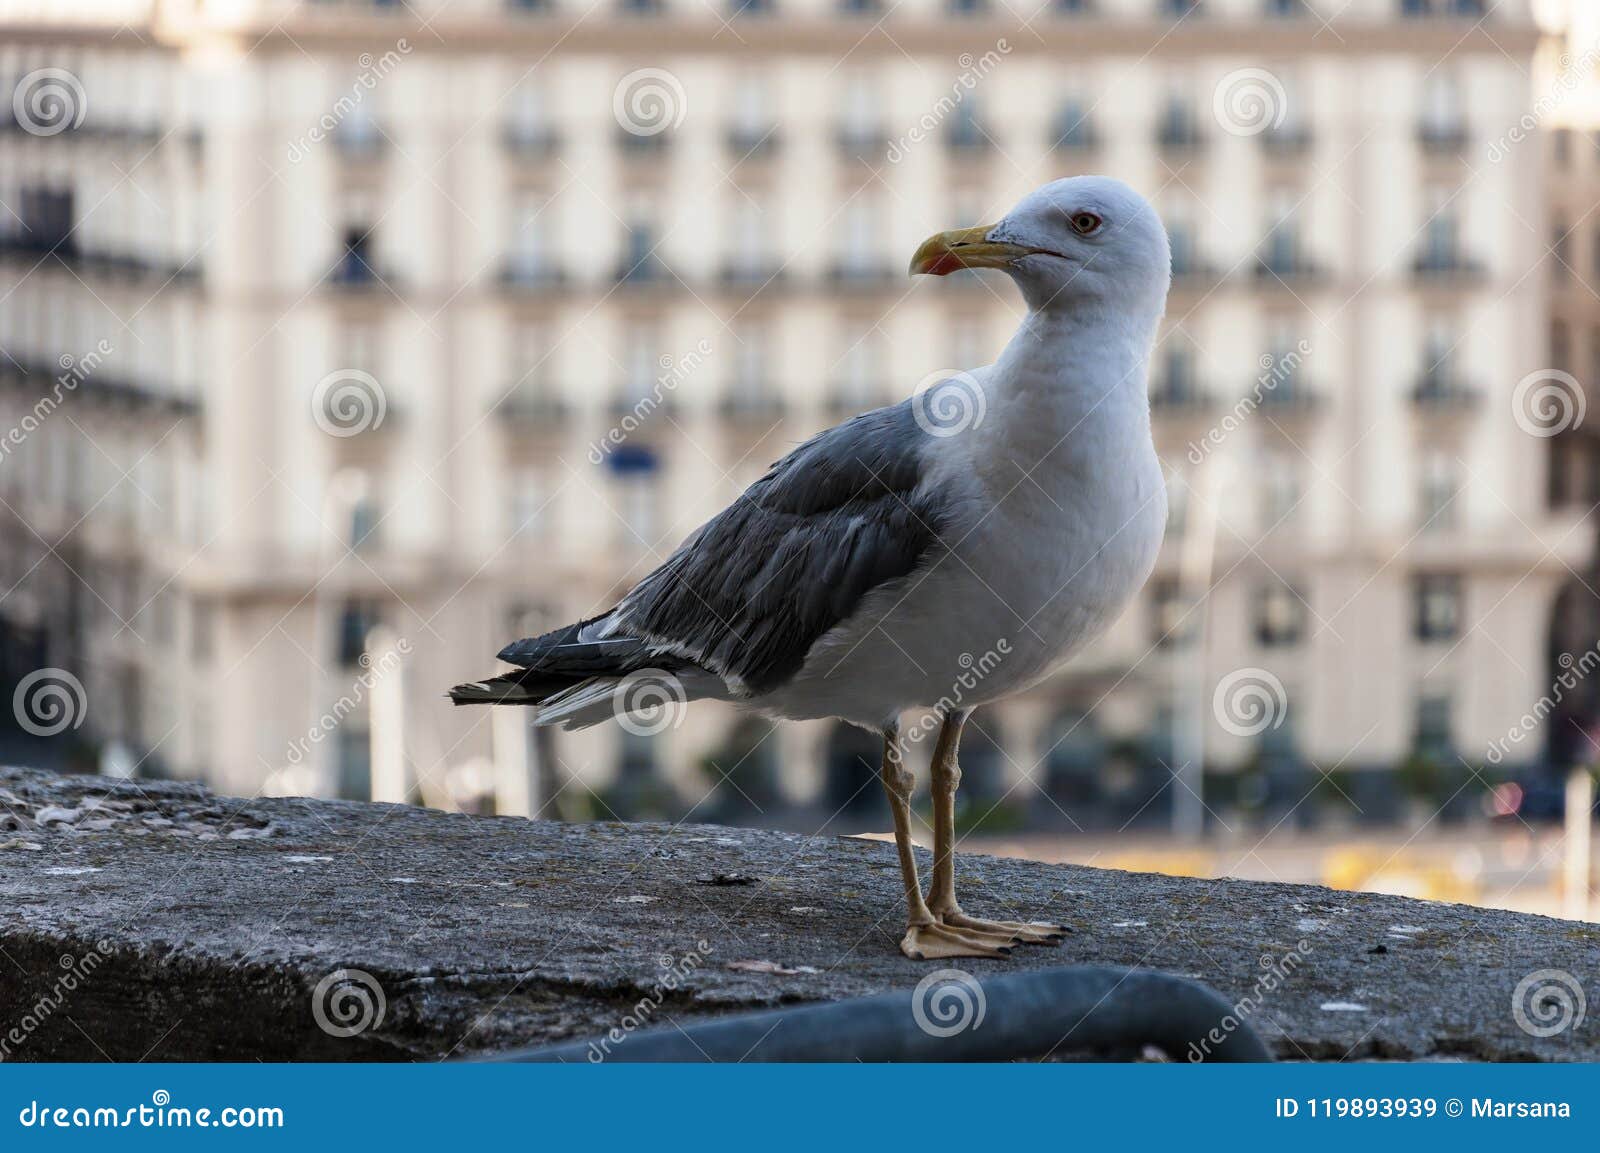 seagull at castel dell`ovo